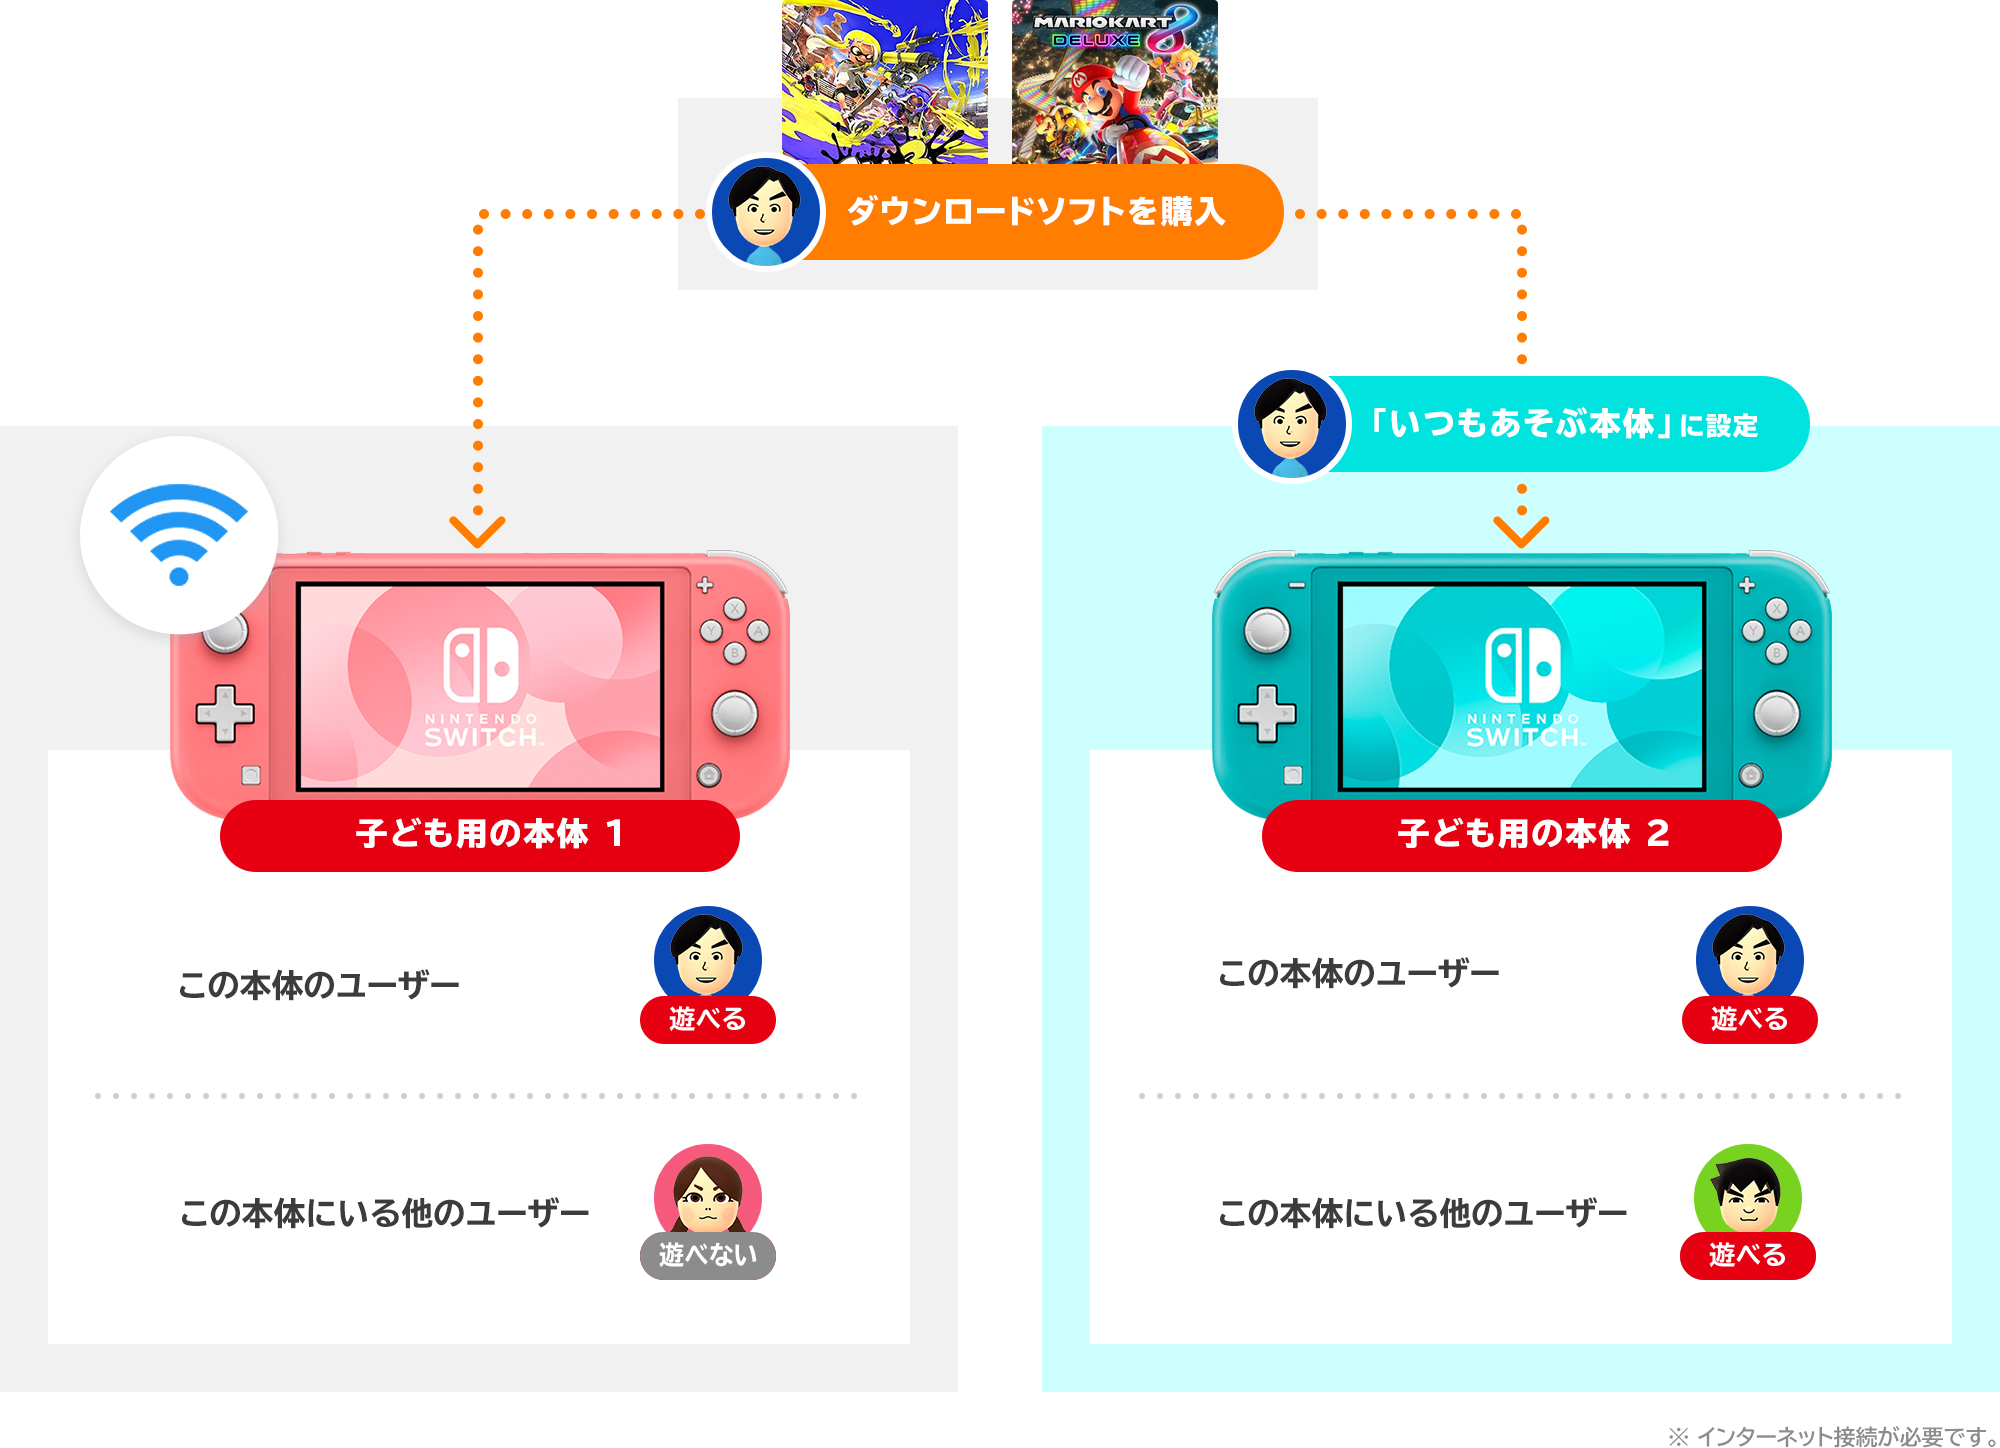 ★即時発送★【新品未開封】Nintendo  Switch 本体  2台